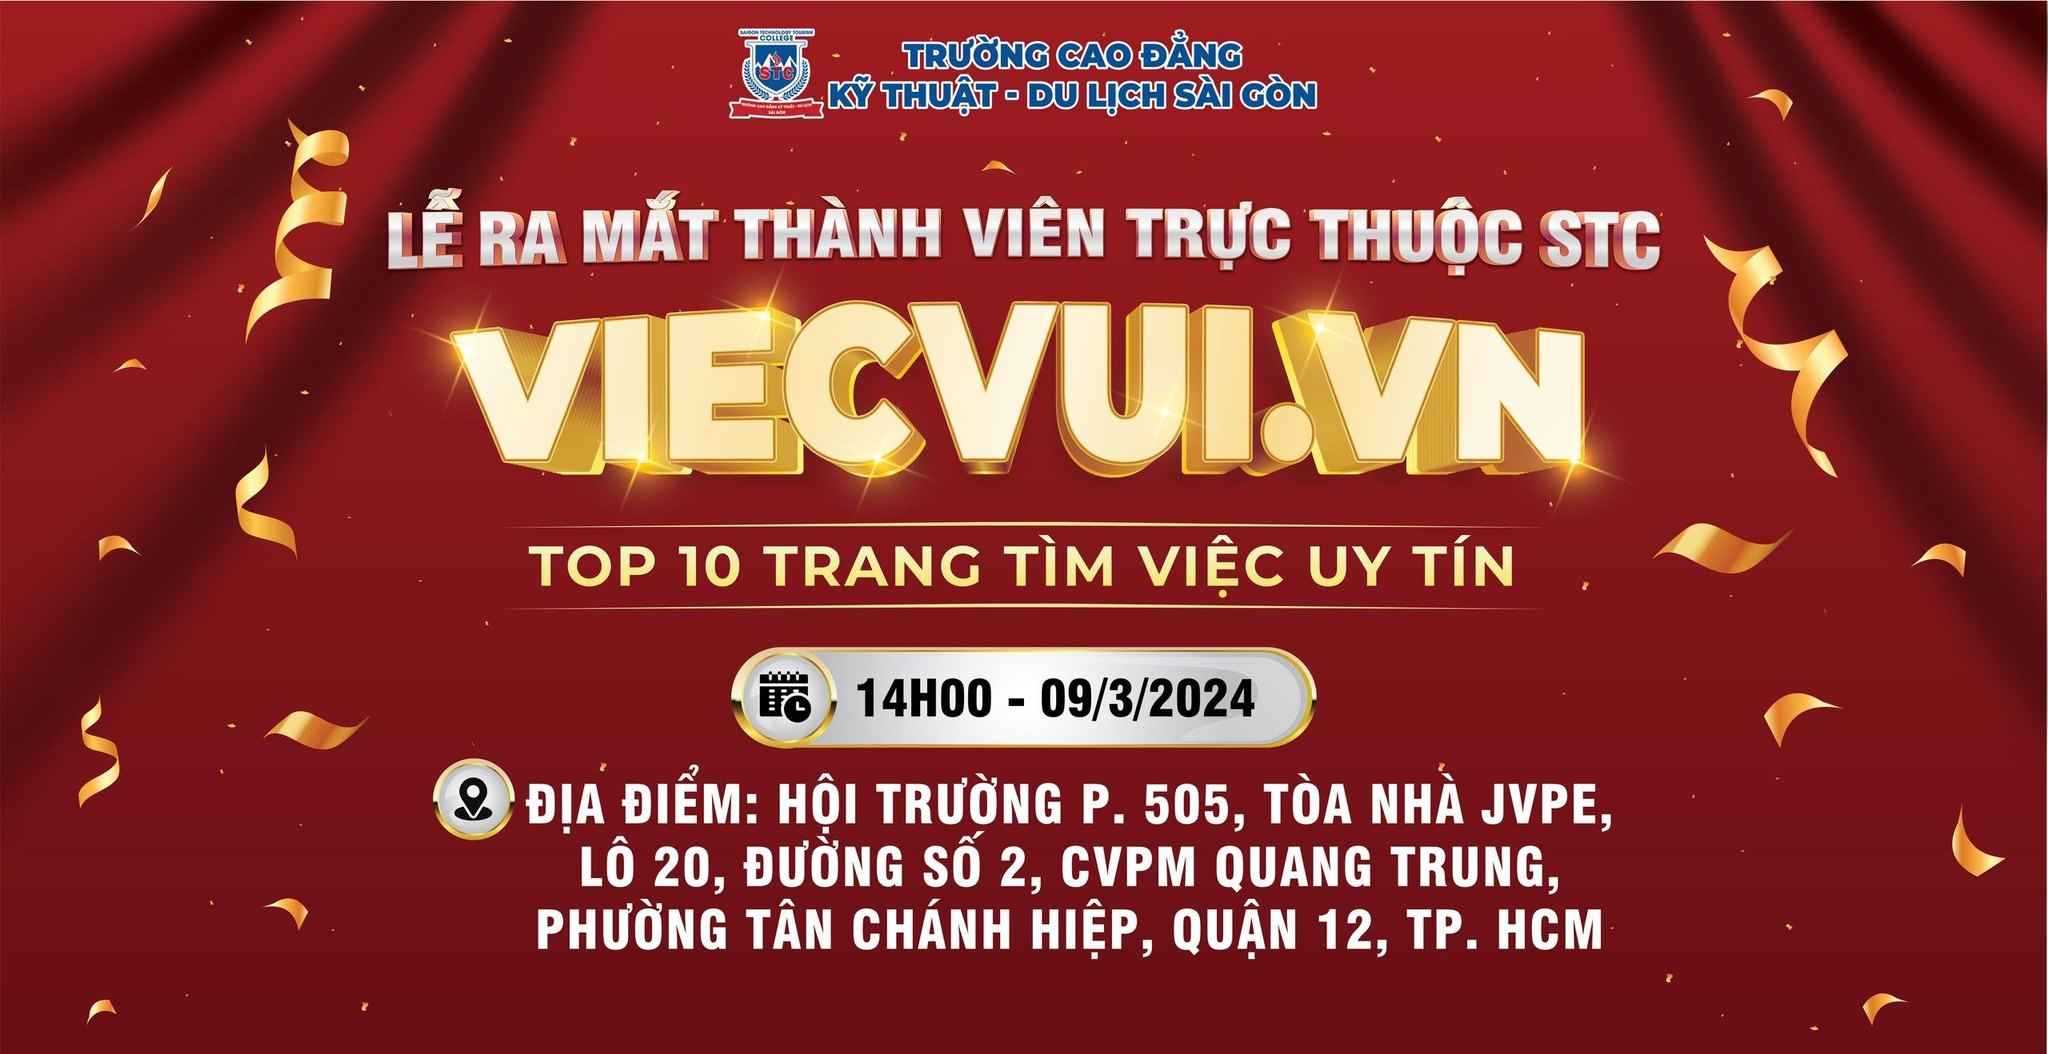 LỄ RA MẮT VIECVUI.VN – ĐƠN VỊ TRỰC THUỘC STC – Cao Đẳng Kỹ Thuật Du Lịch Sài Gòn